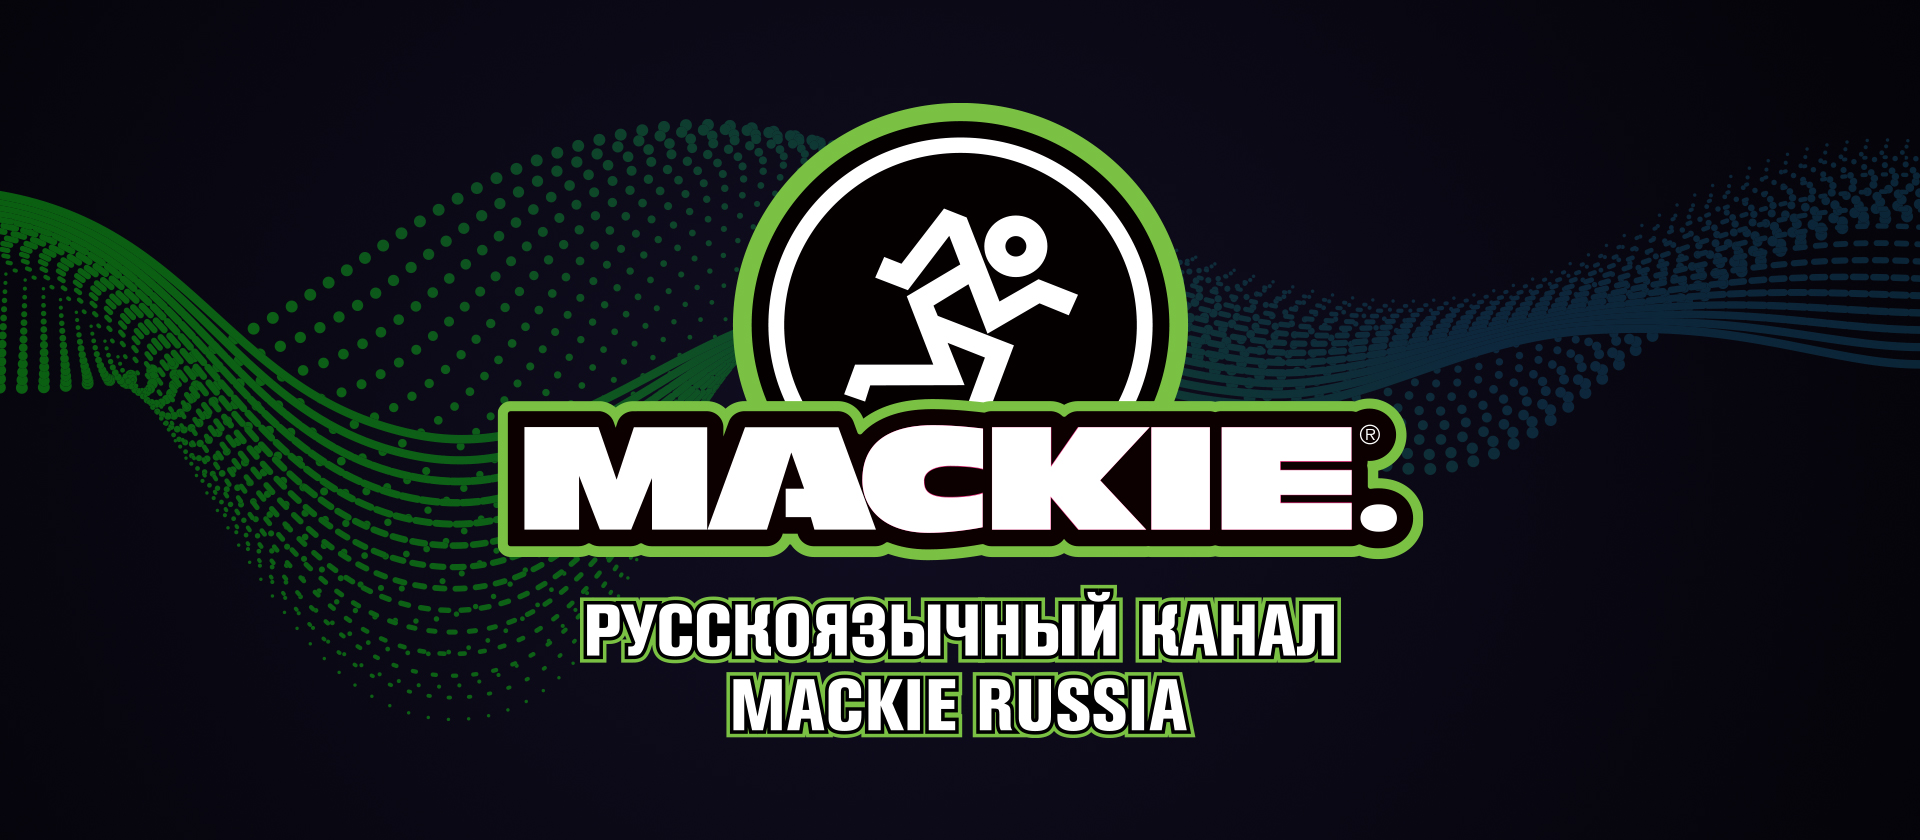 Youtube-канал Mackie Russia